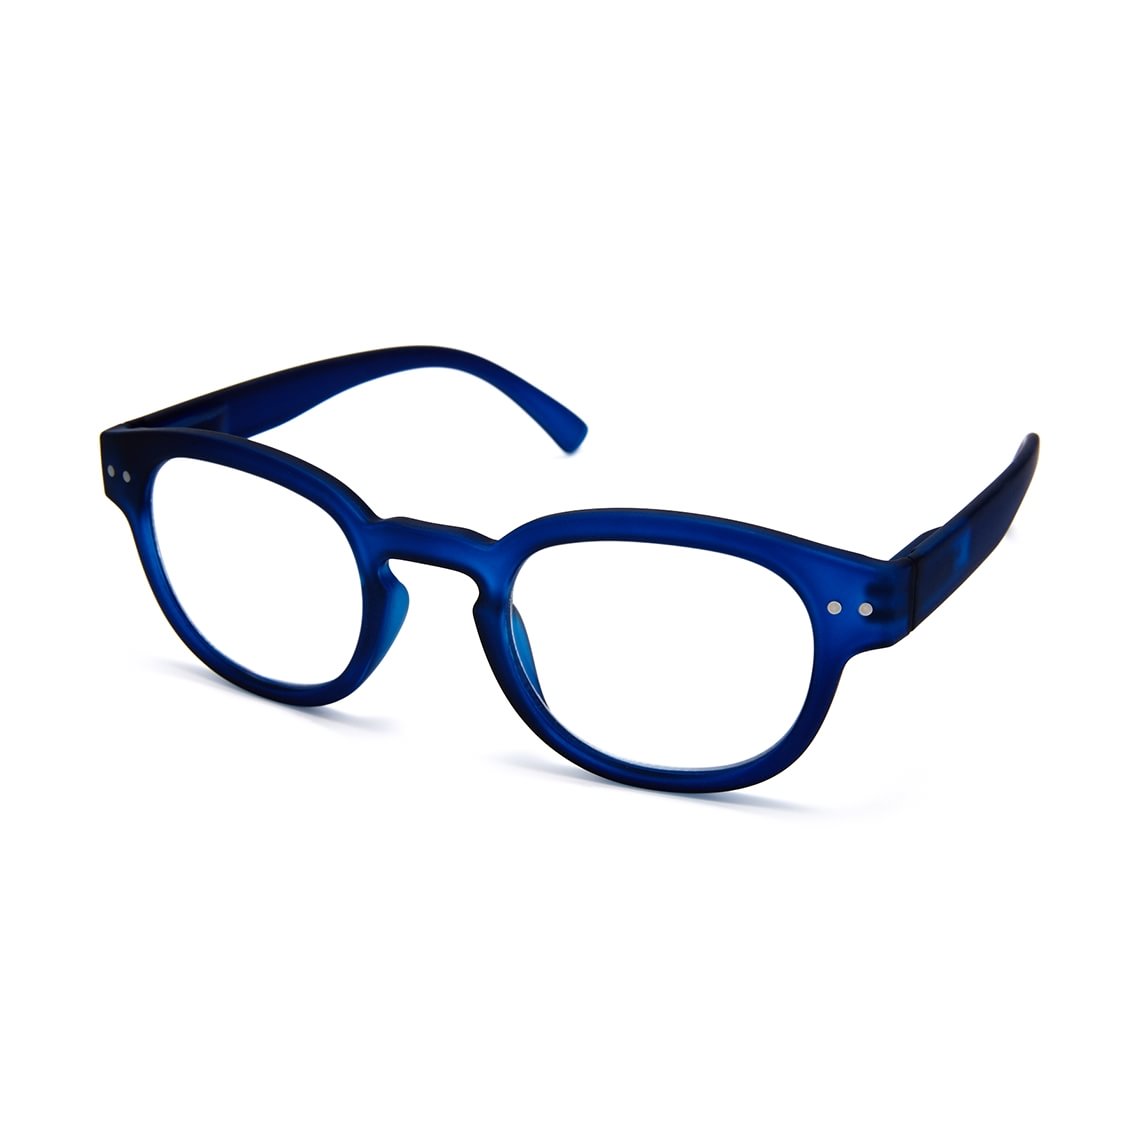 bakke Blæse Tørke Readers - Læsebriller Pantos Blue - Profil Optik